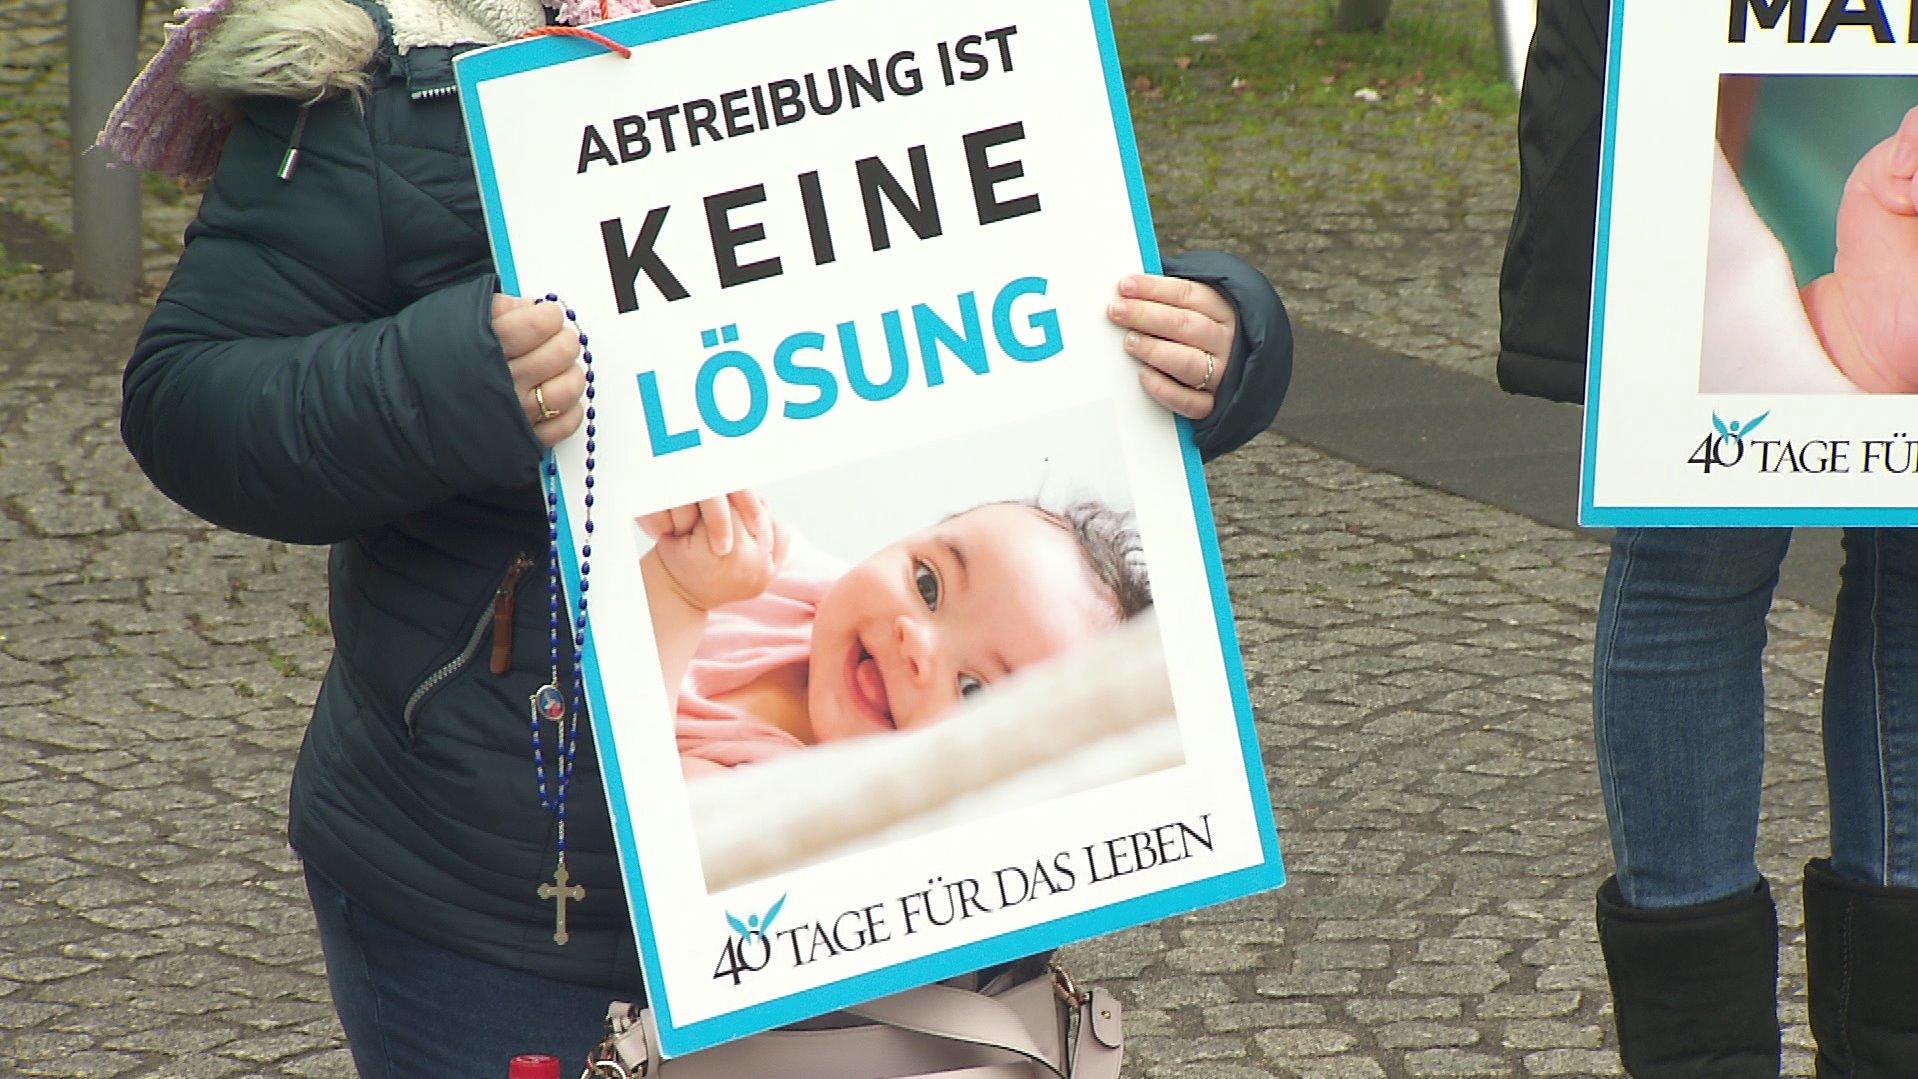 Mit Plakaten stehen Mitglieder der Gruppe "40 Tage für das Leben" vor der Frankfurter Beratungsstelle von pro familia.